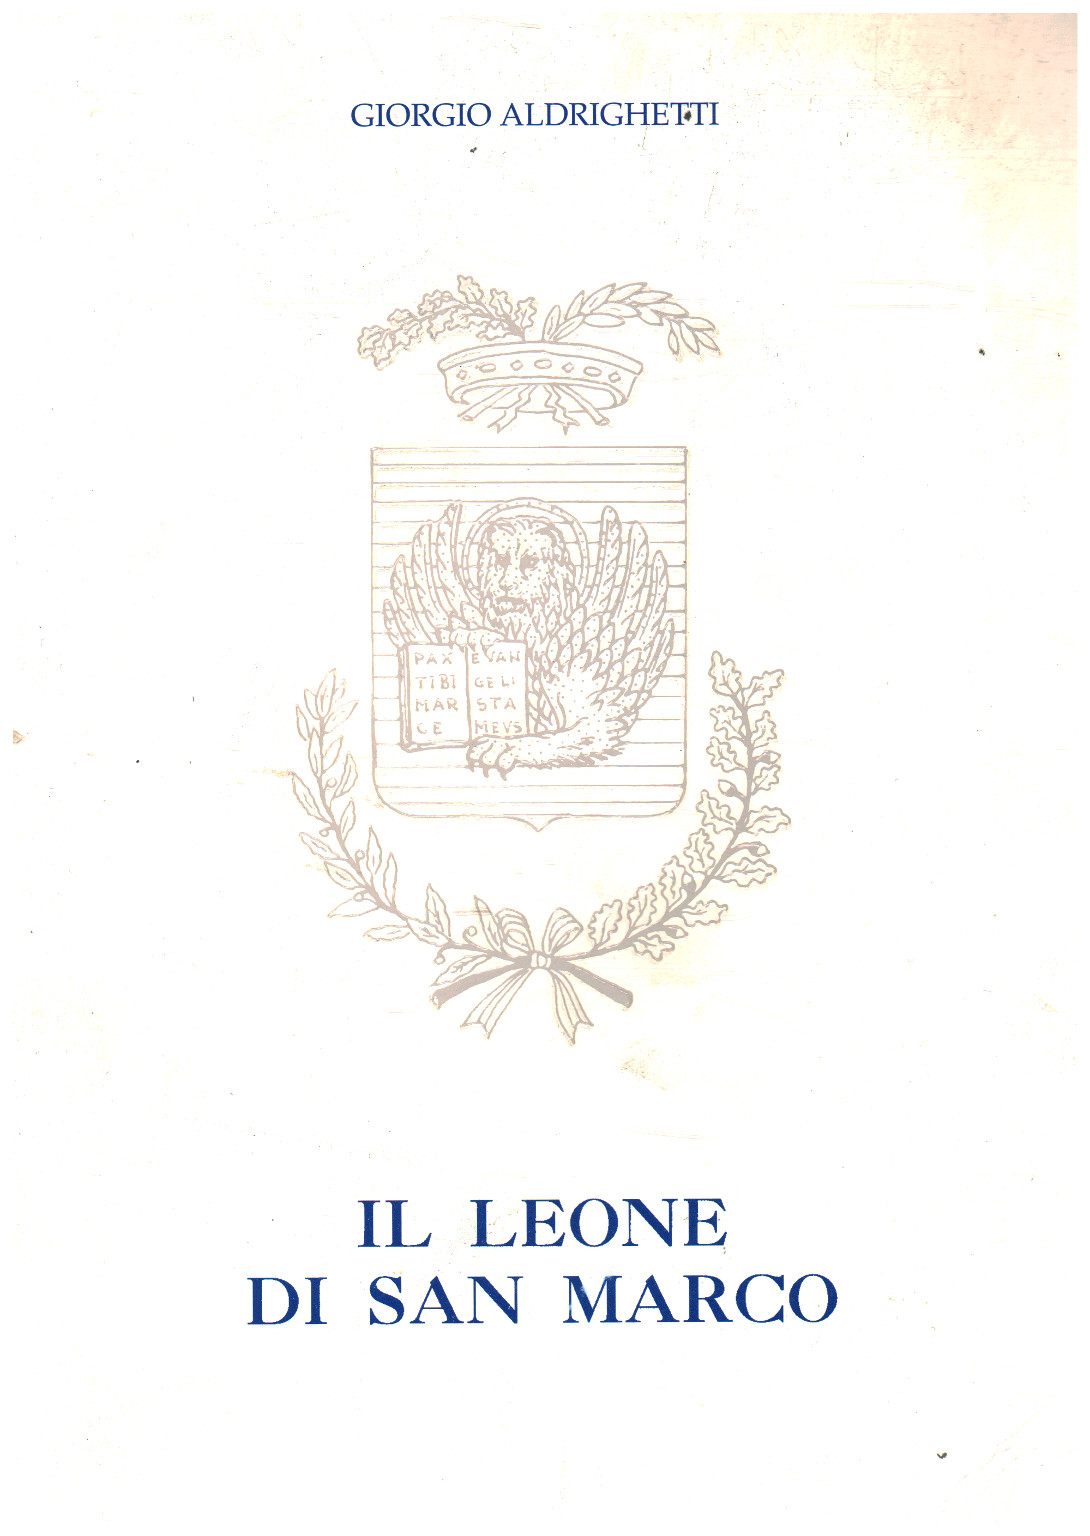 Il Leone di San Marco, Giorgio Aldrighetti